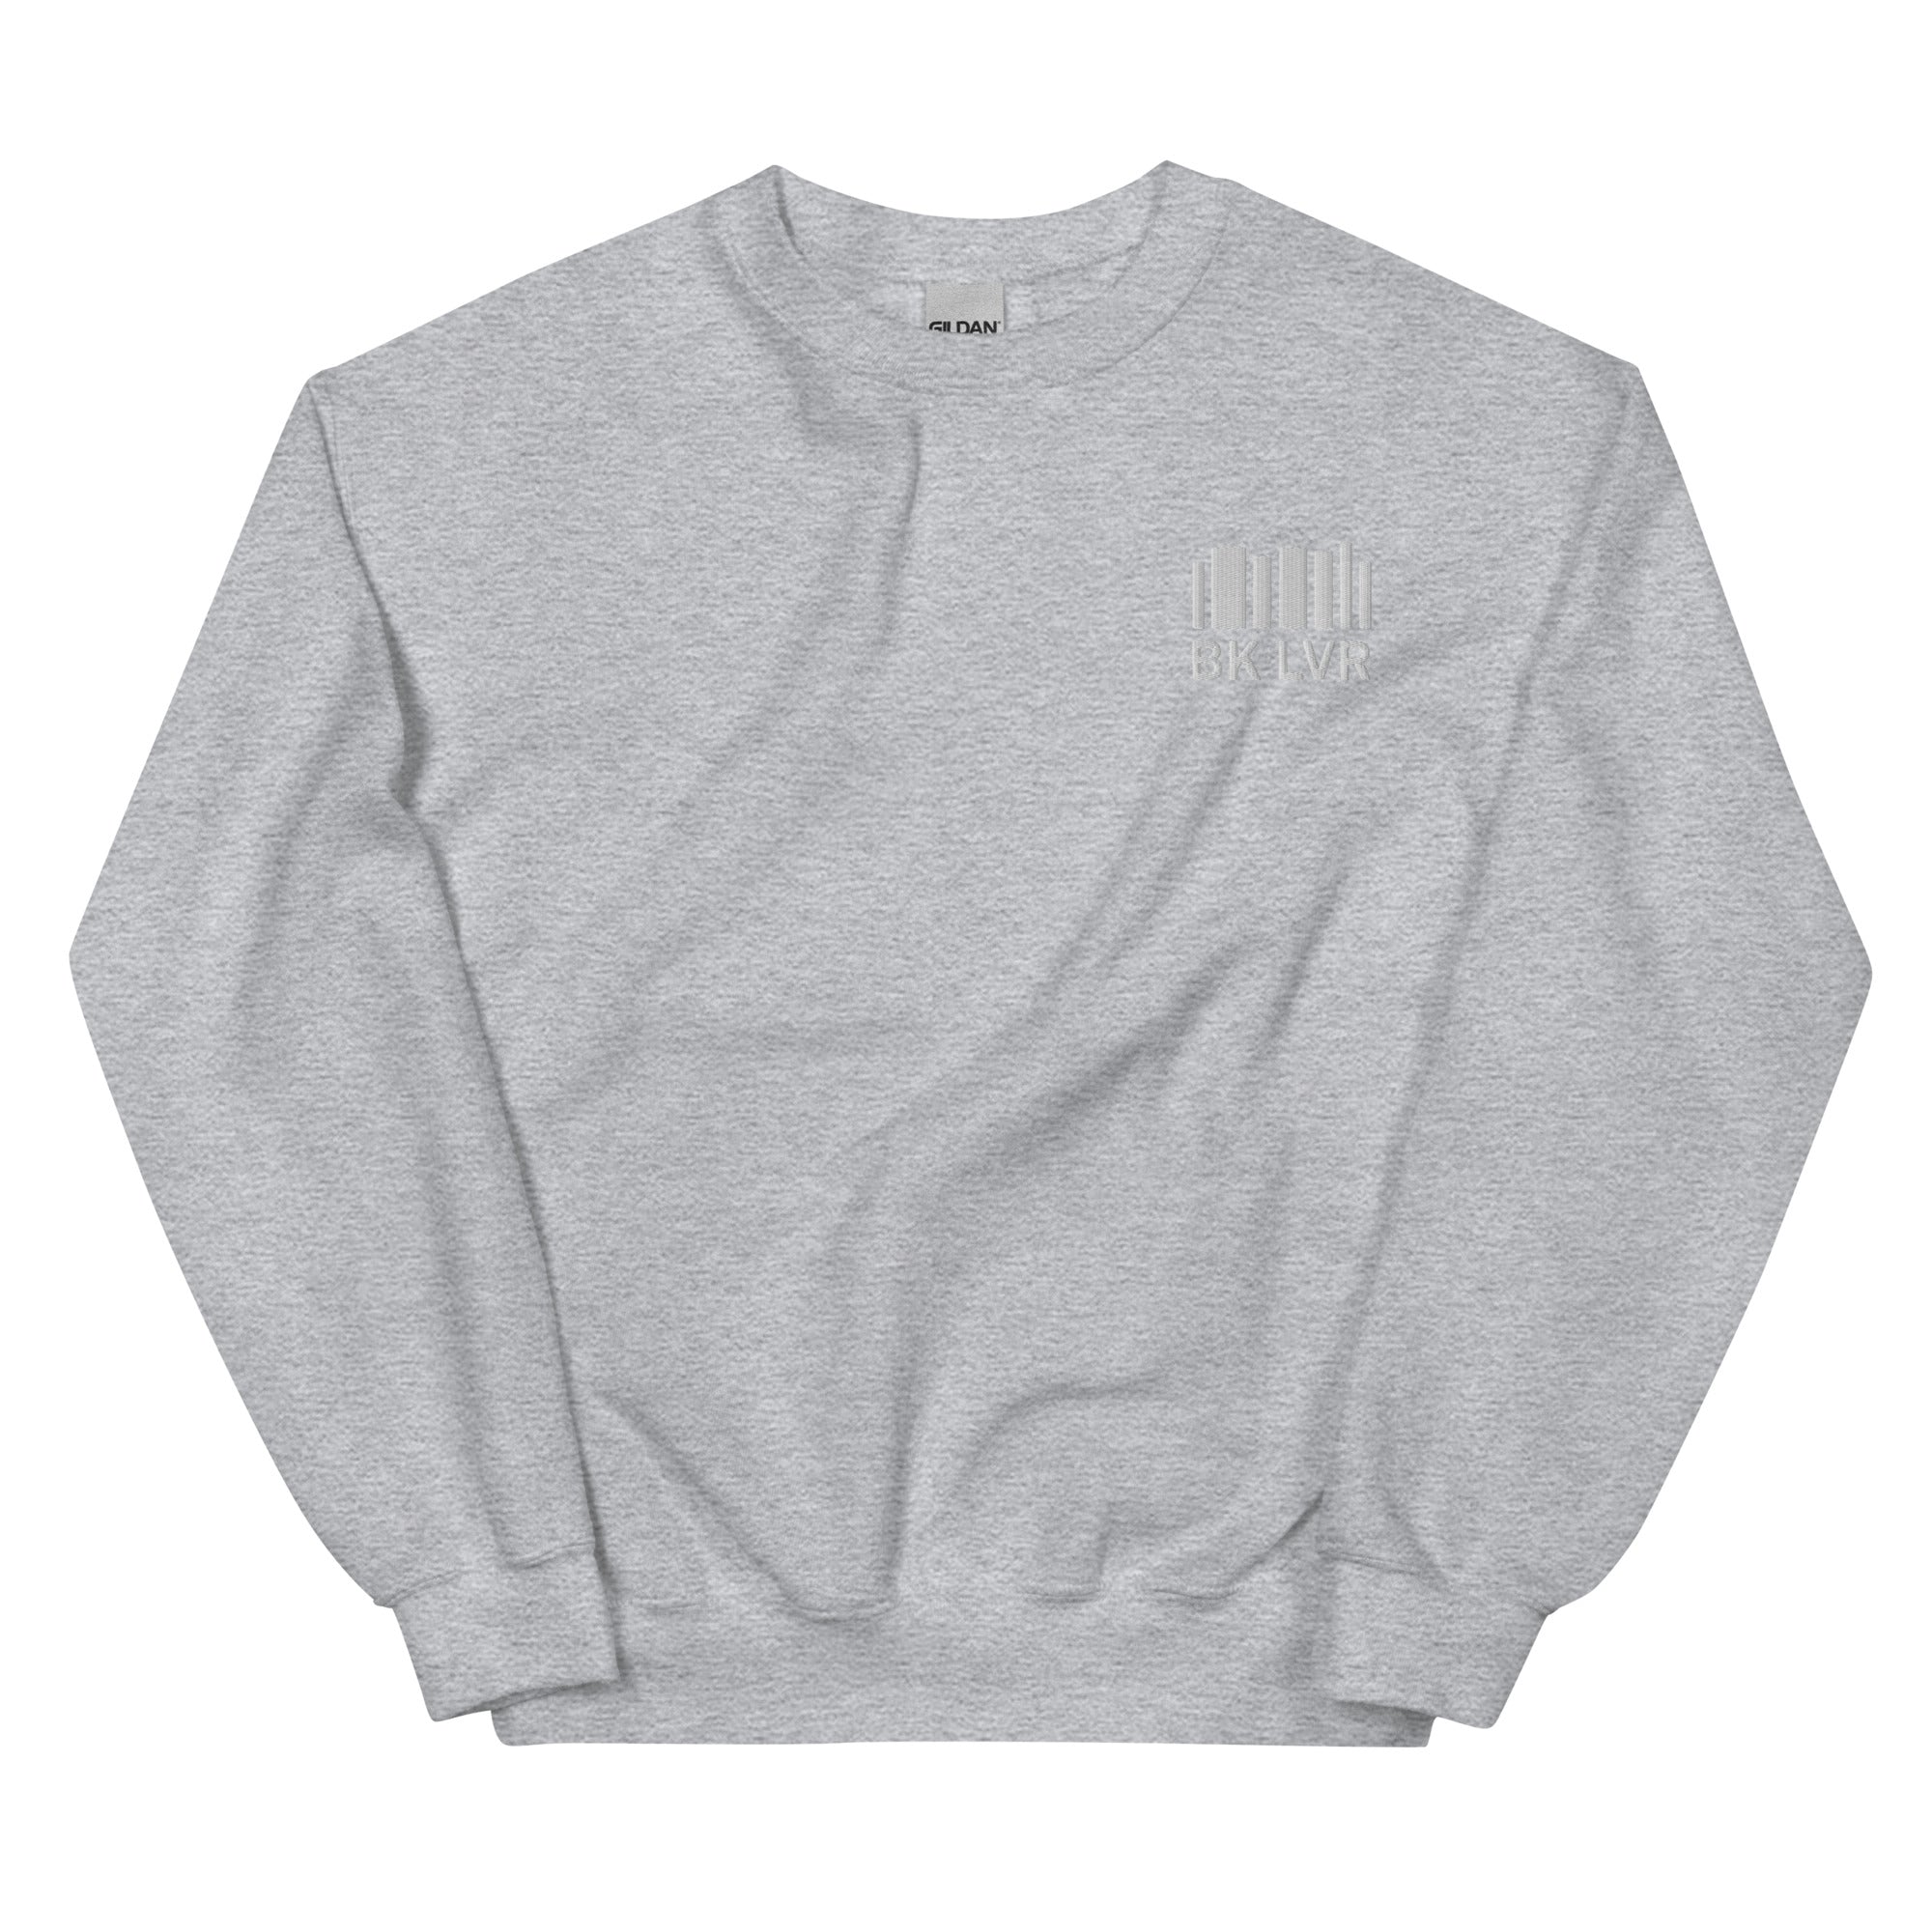 BK LVR Embroidered Sweatshirt